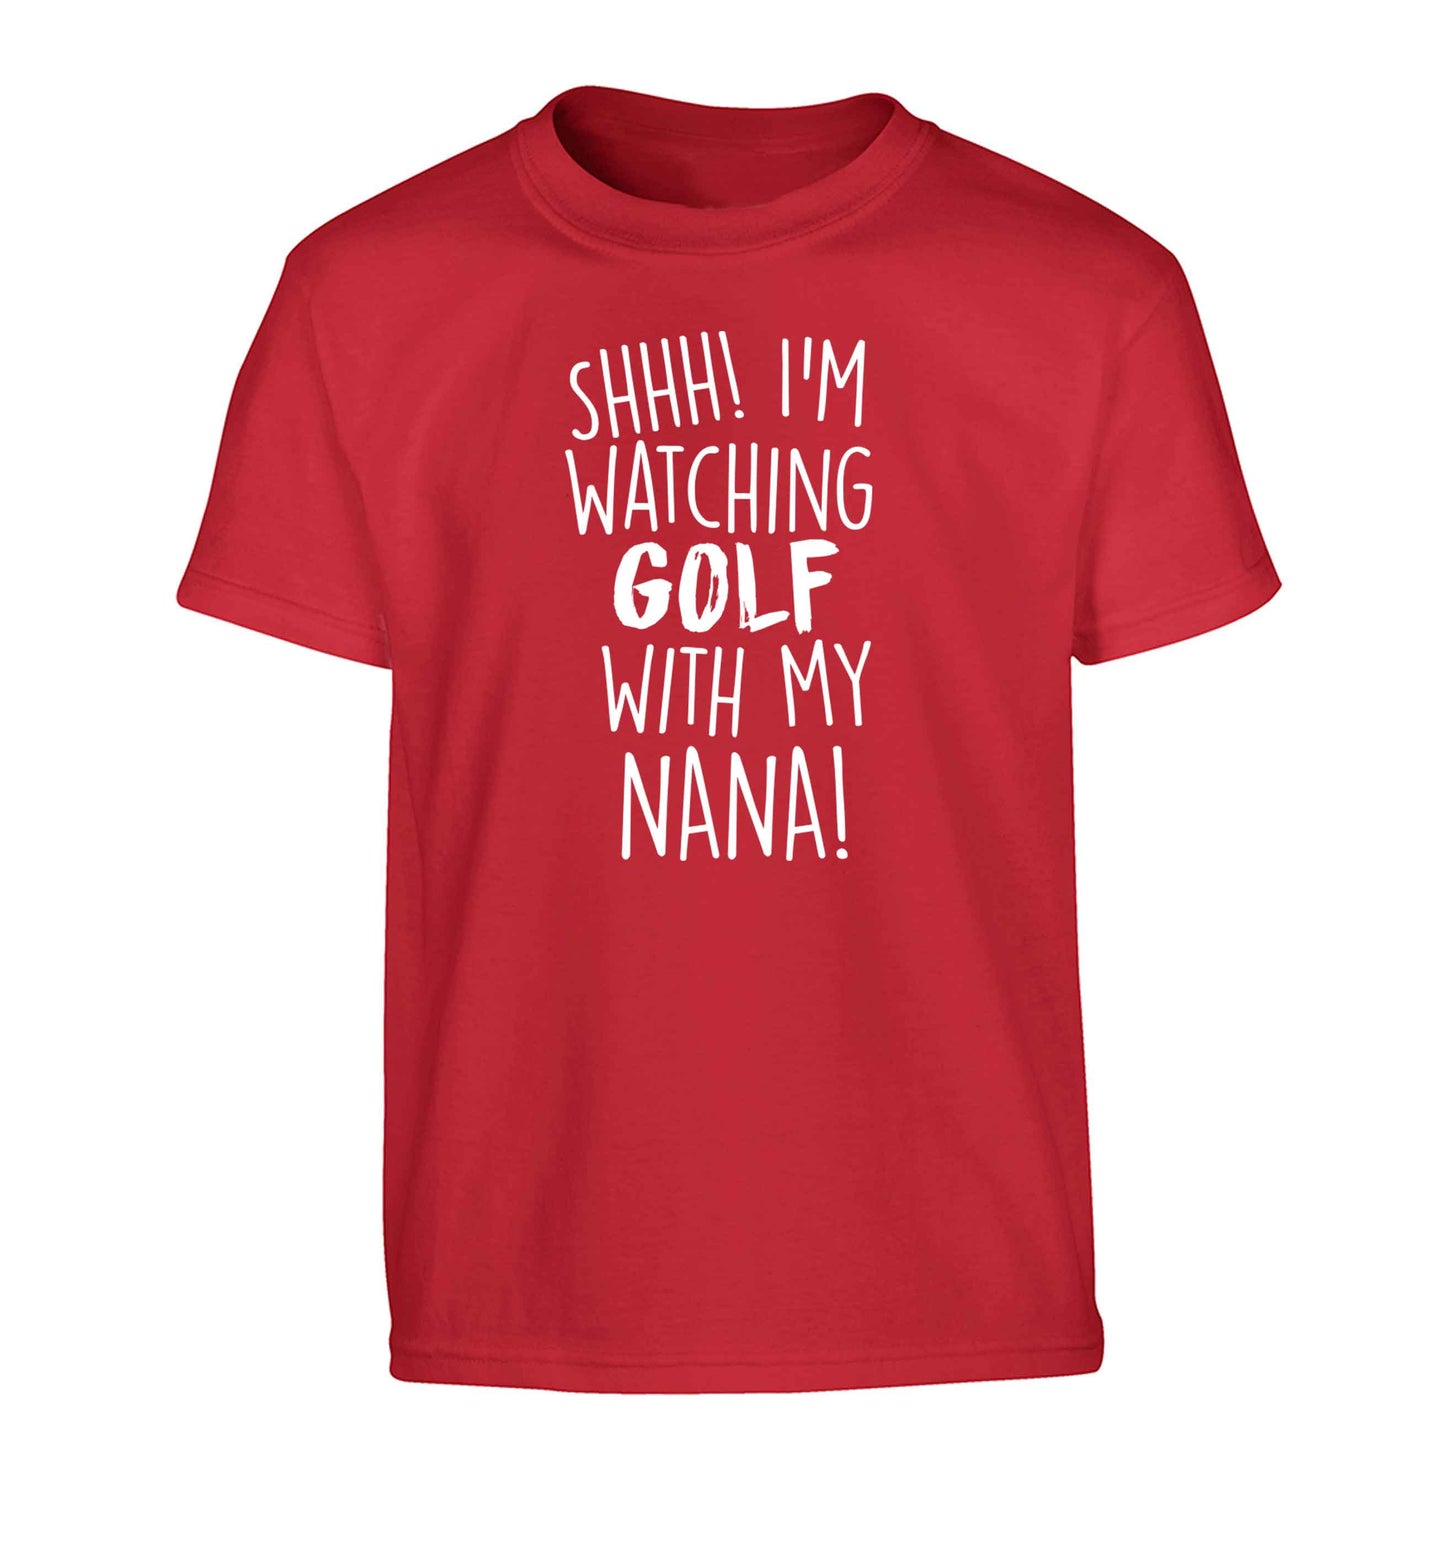 Shh I'm watching golf with my nana Children's red Tshirt 12-13 Years